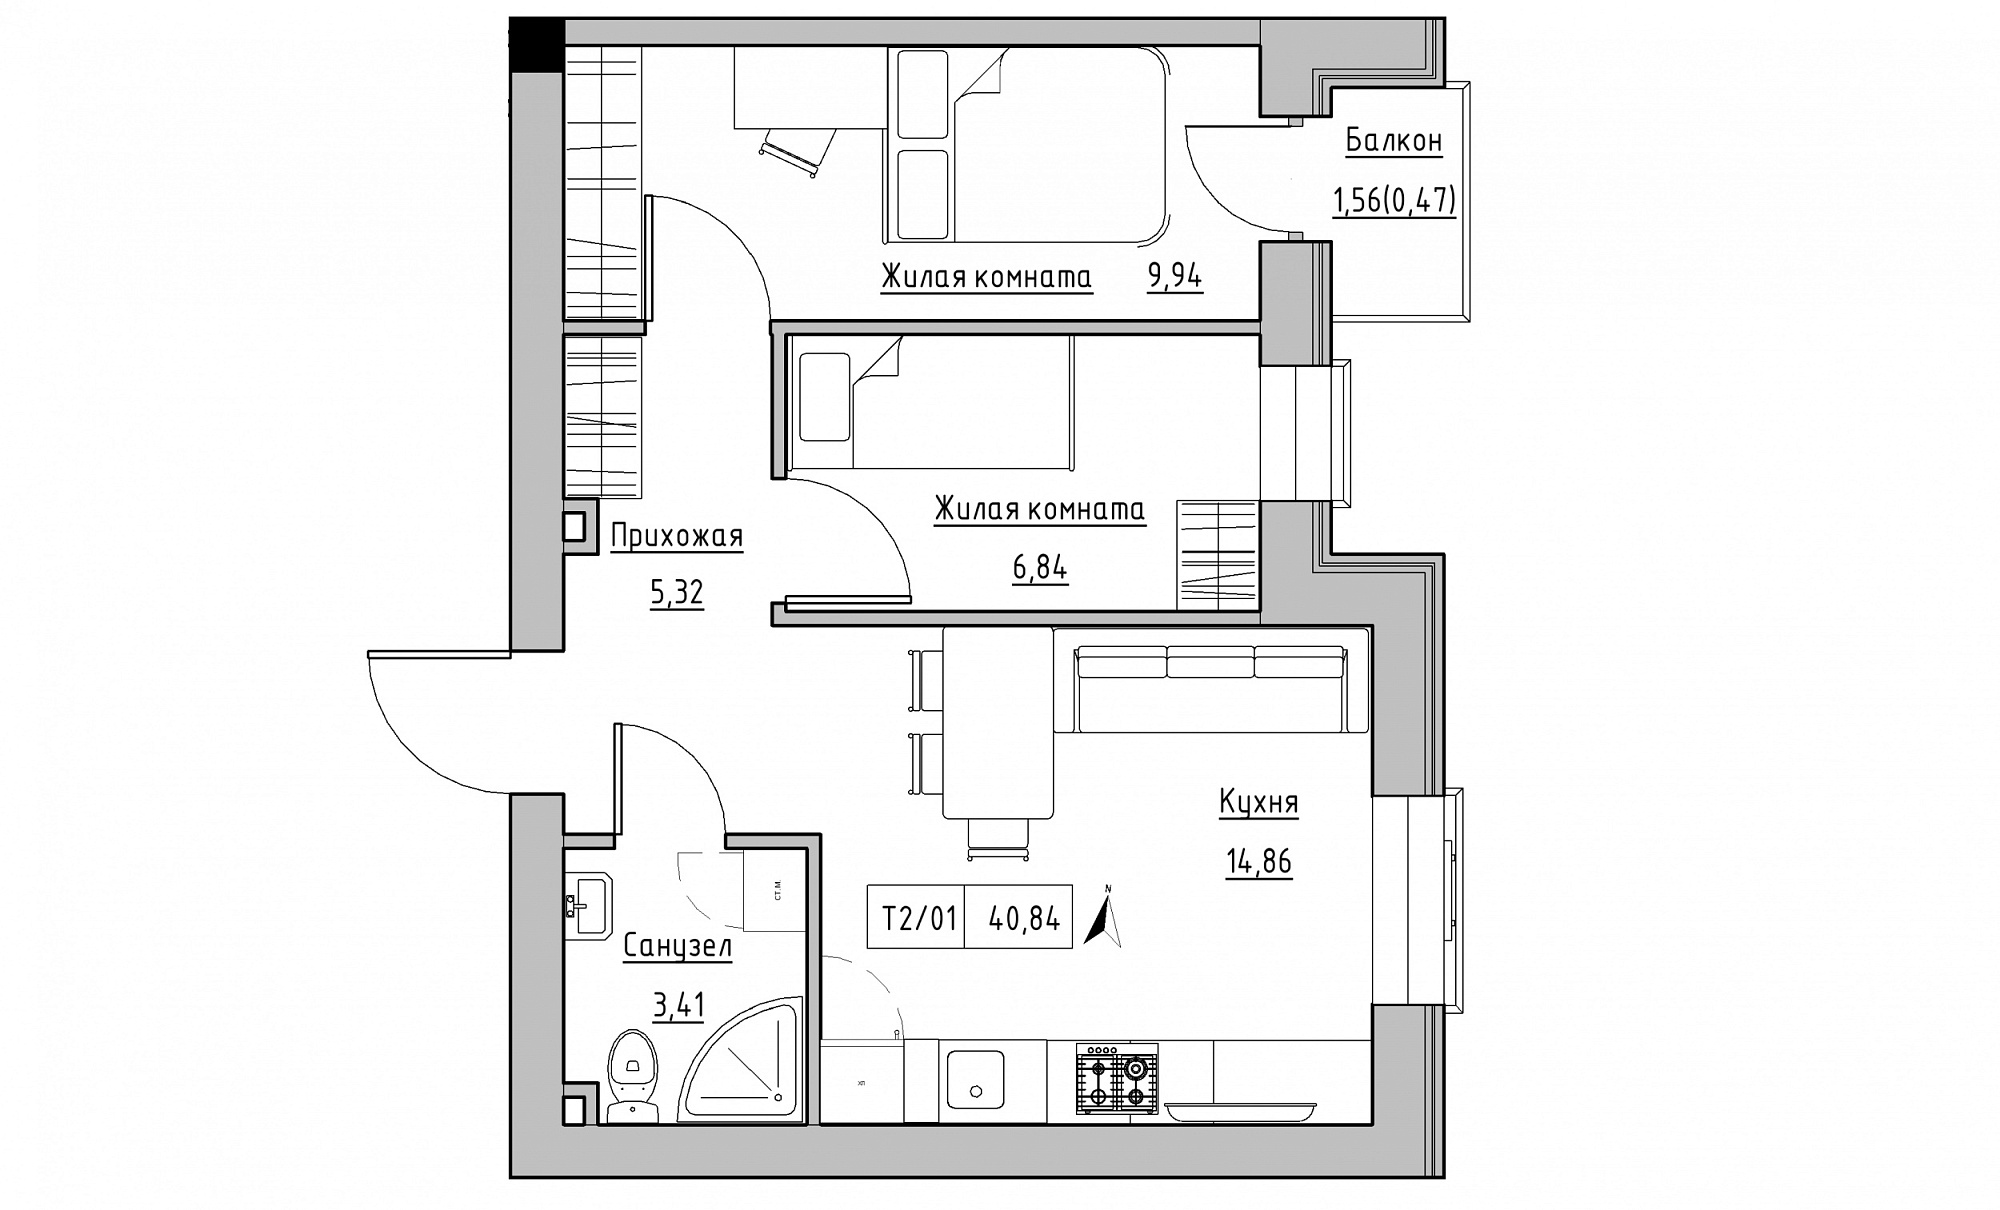 Планировка 2-к квартира площей 40.84м2, KS-015-02/0006.